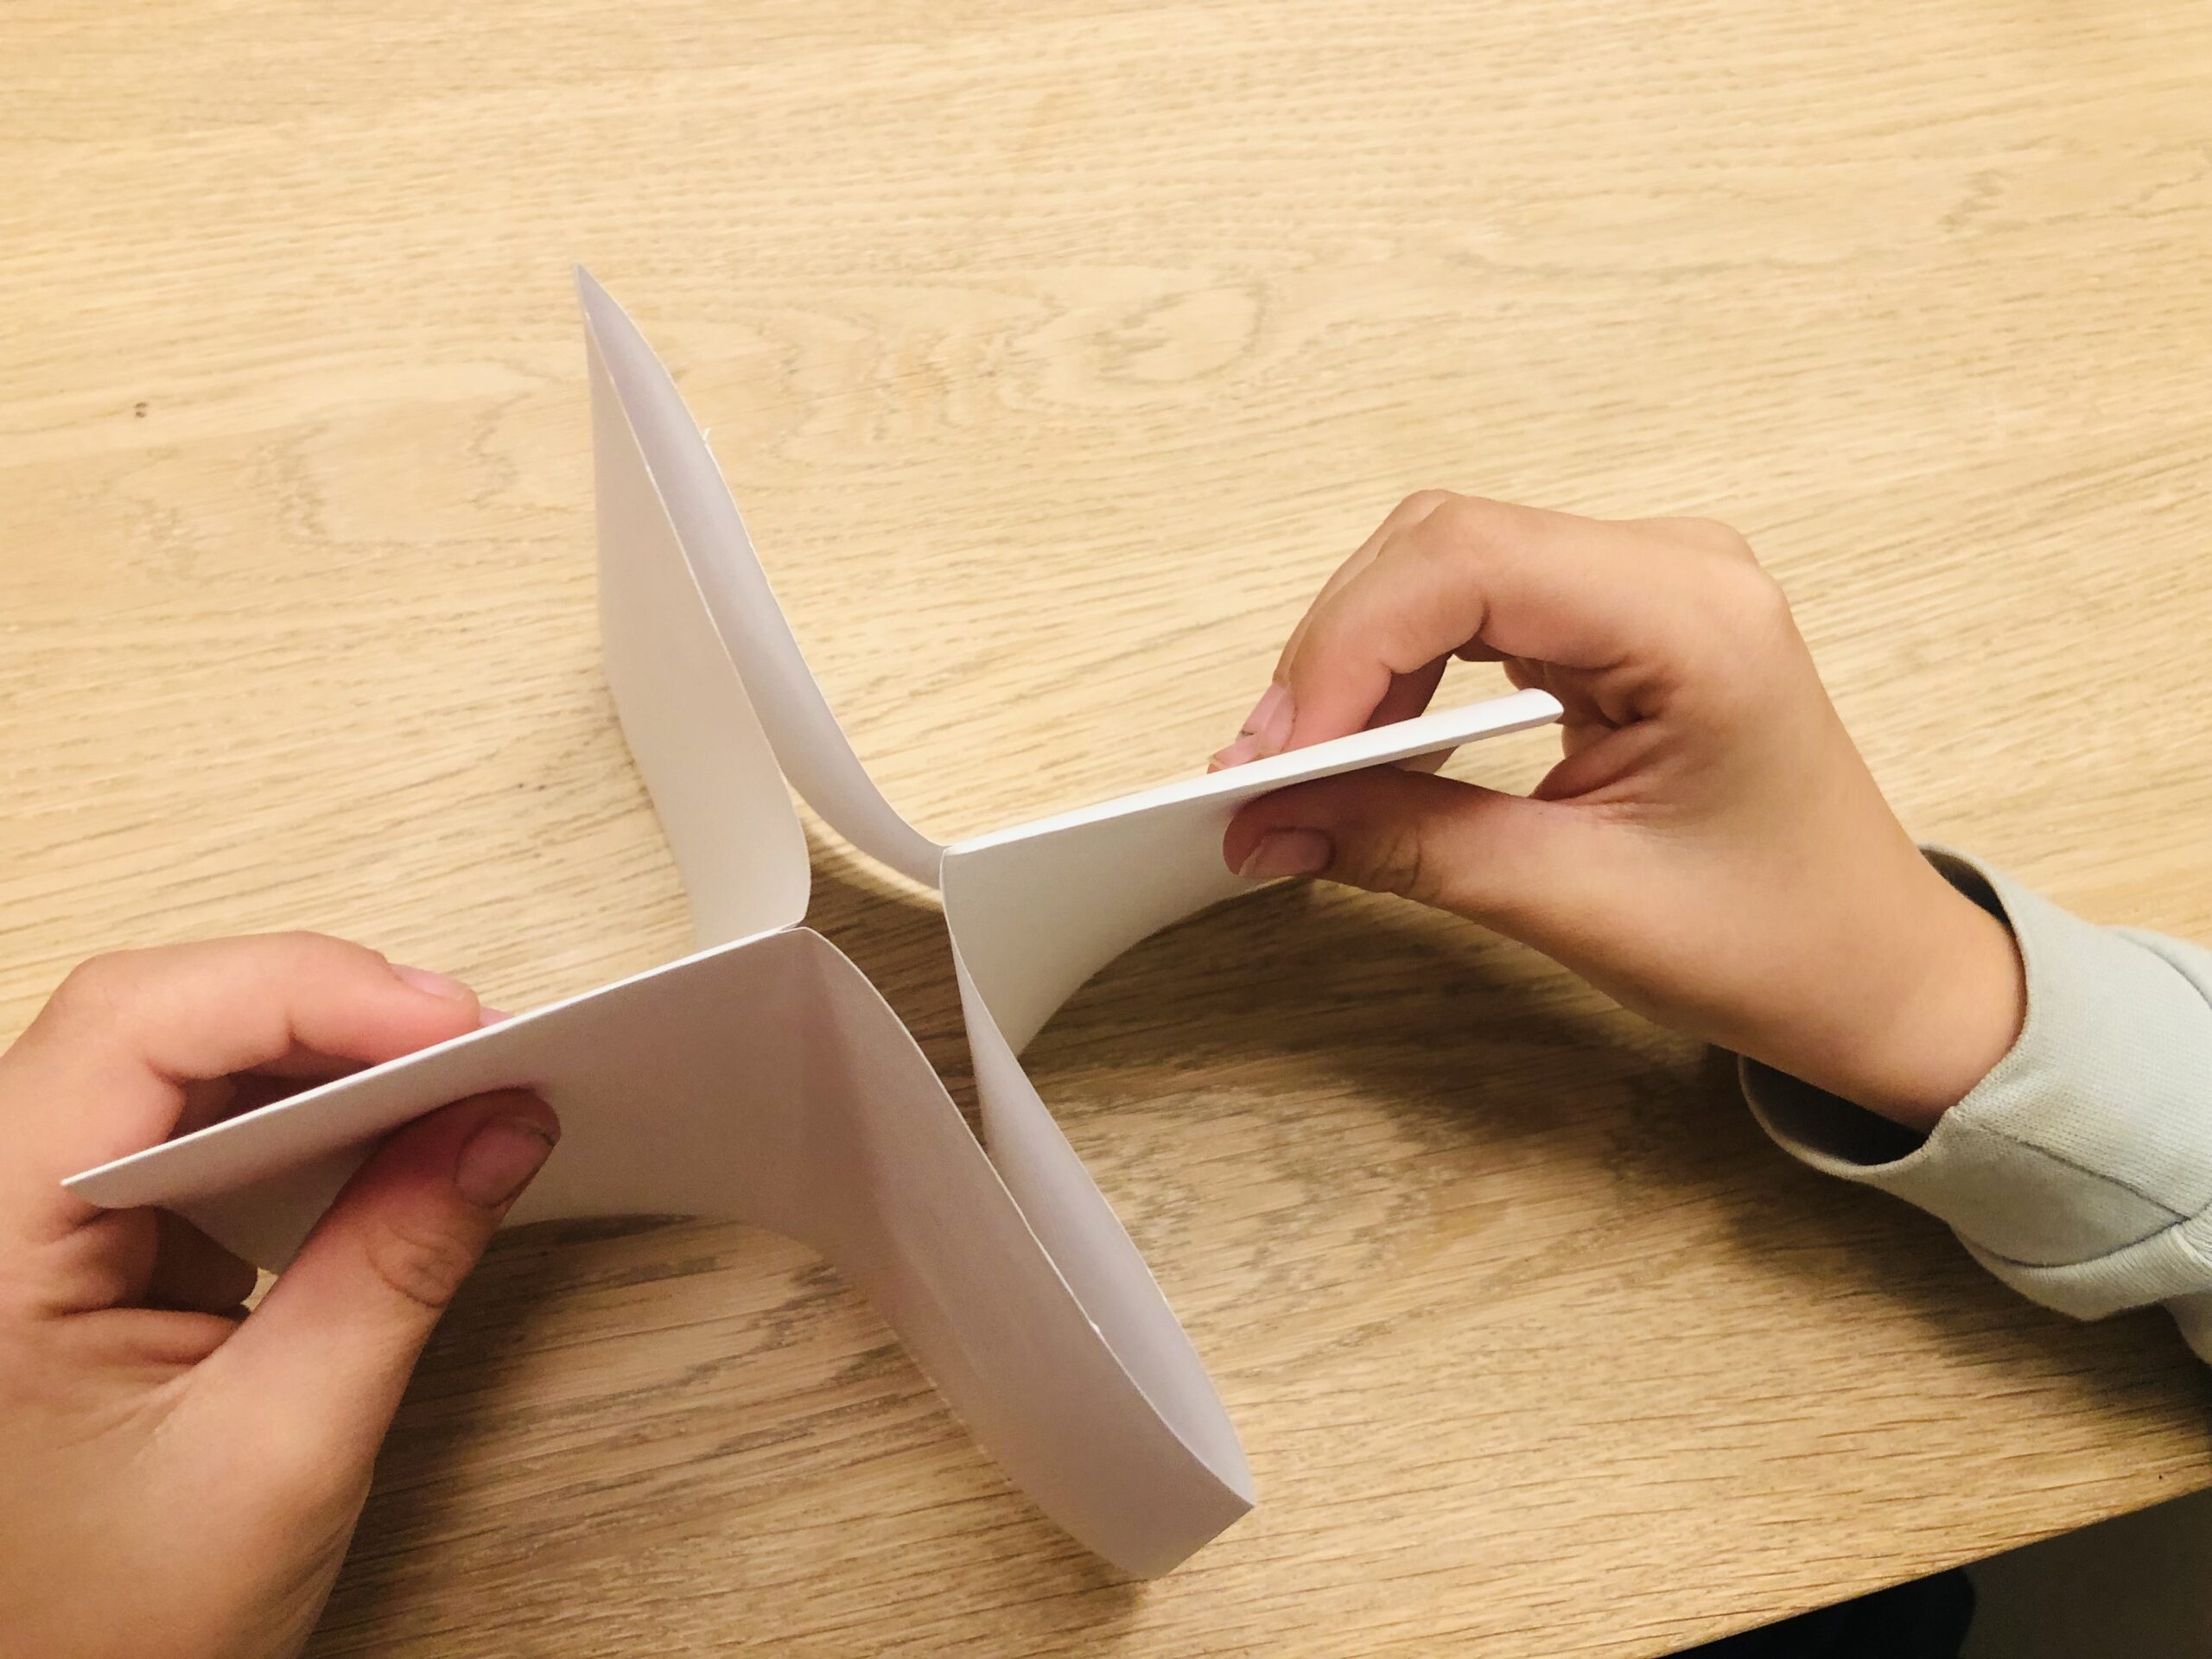 Bild zum Schritt 17 für das Bastel- und DIY-Abenteuer für Kinder: 'Schiebt das Papier weiter zusammen, so dass es wie ein...'